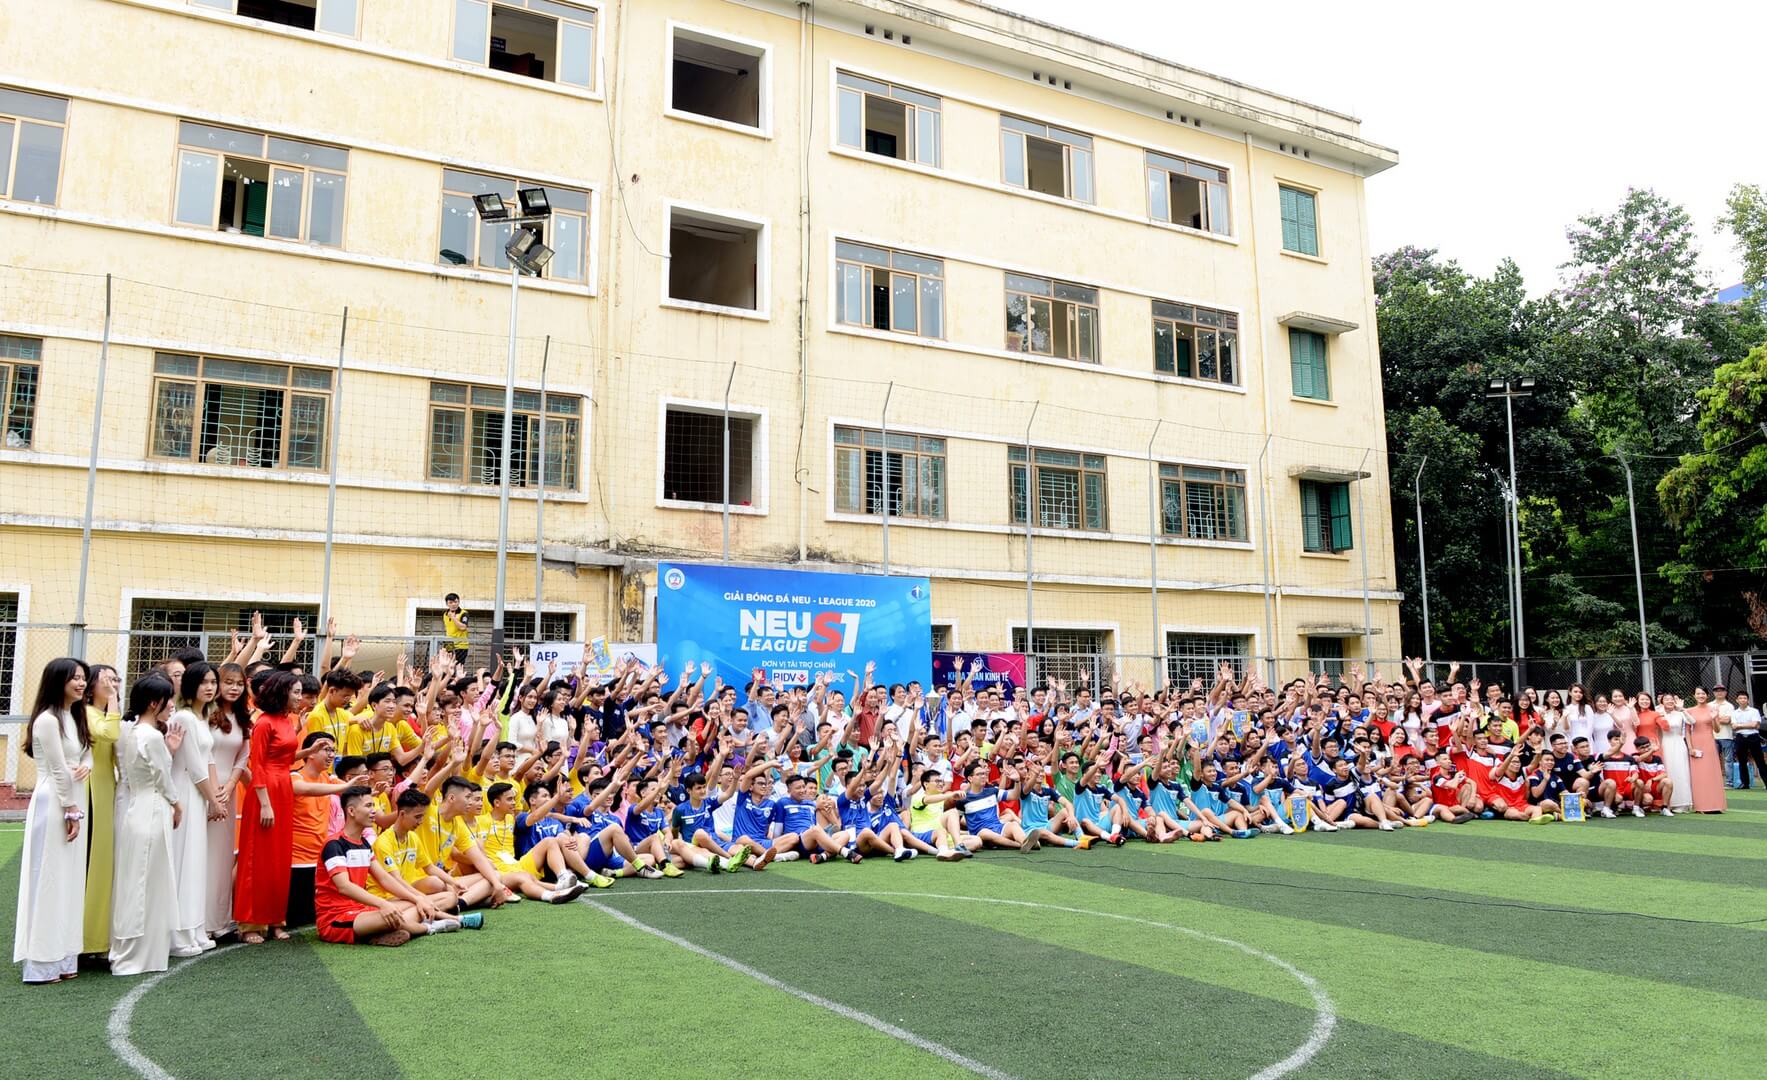 Trường Đại học Kinh tế Quốc dân từng bừng khai mạc Giải bóng đá NEU League 2020 - Ảnh 9.